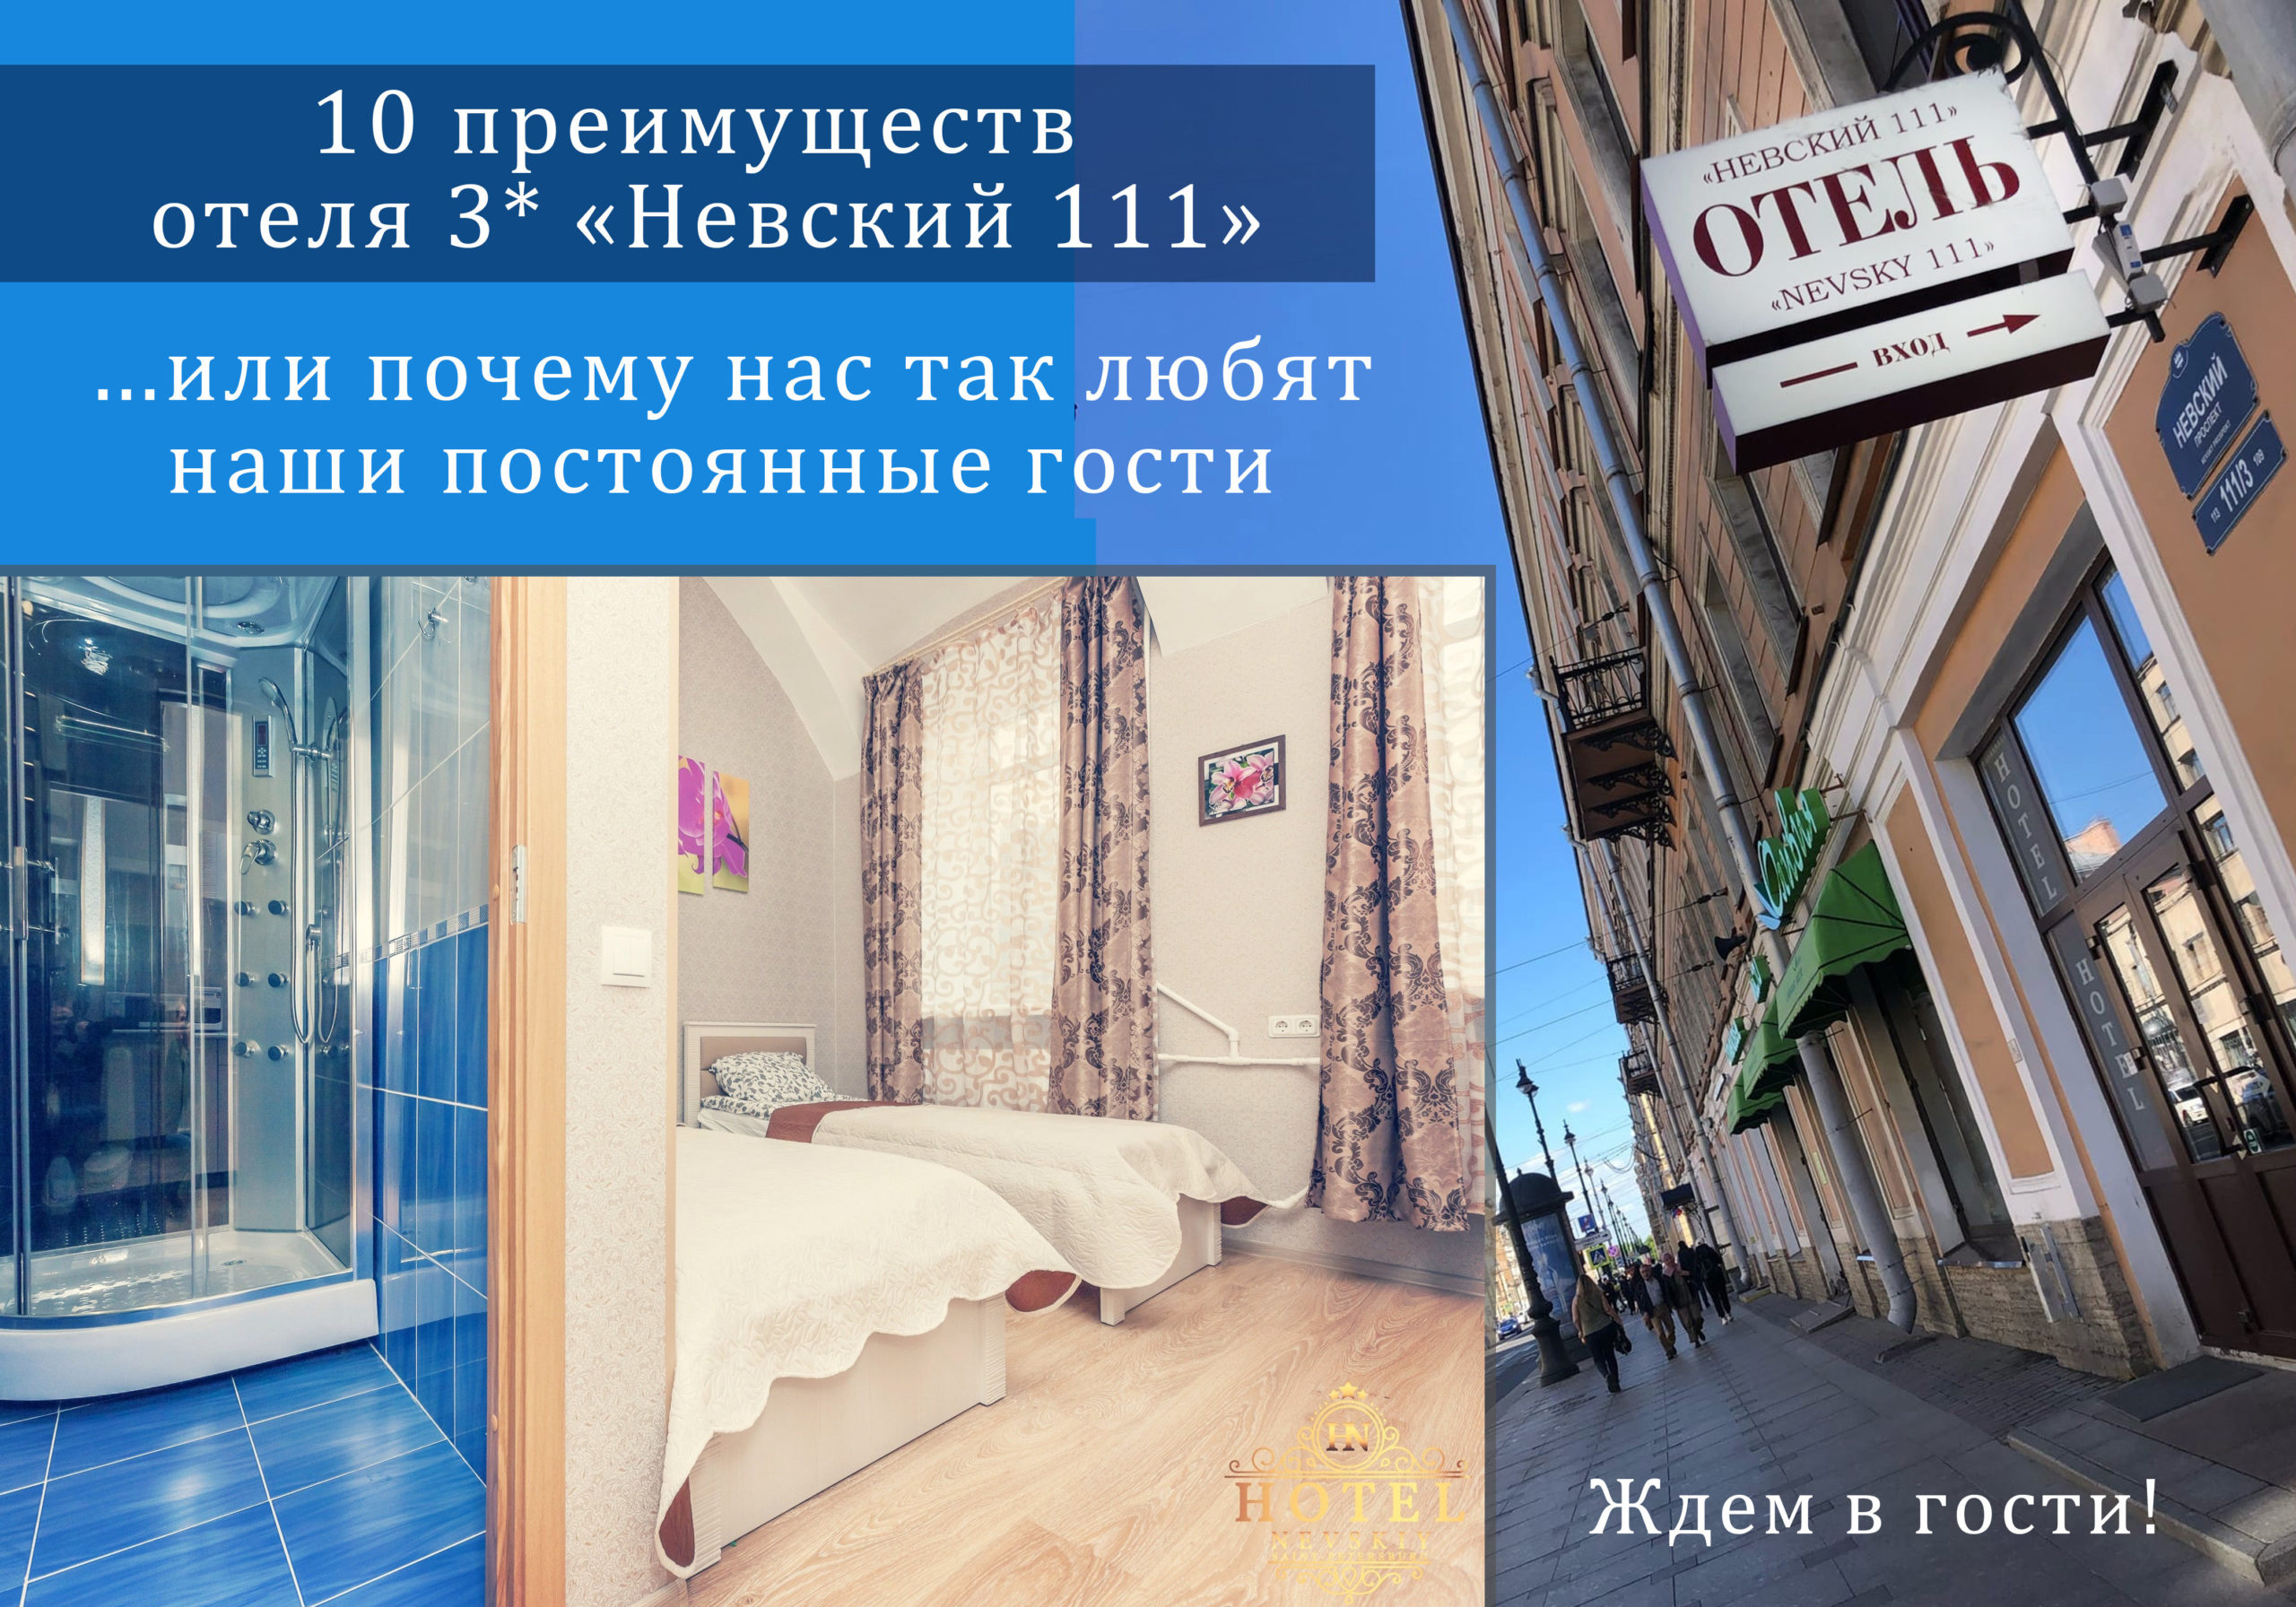 Отель Невский 111